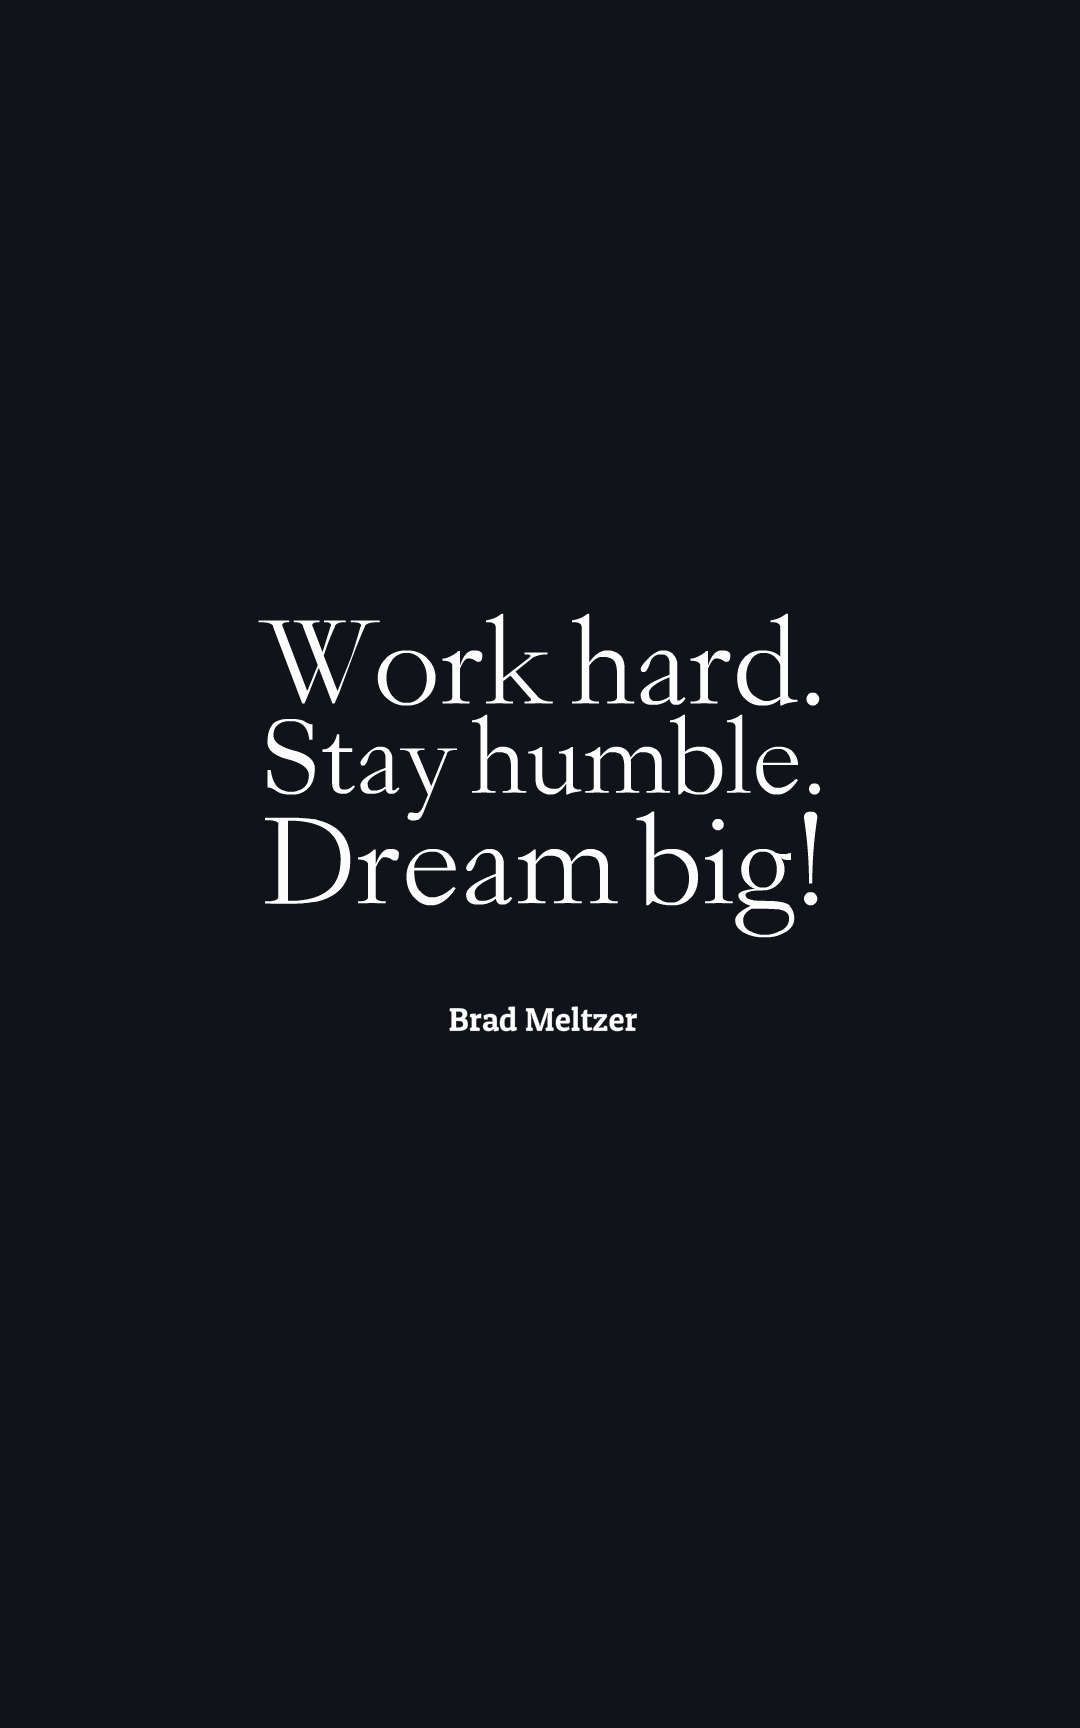 Work hard. Stay humble. Dream big!